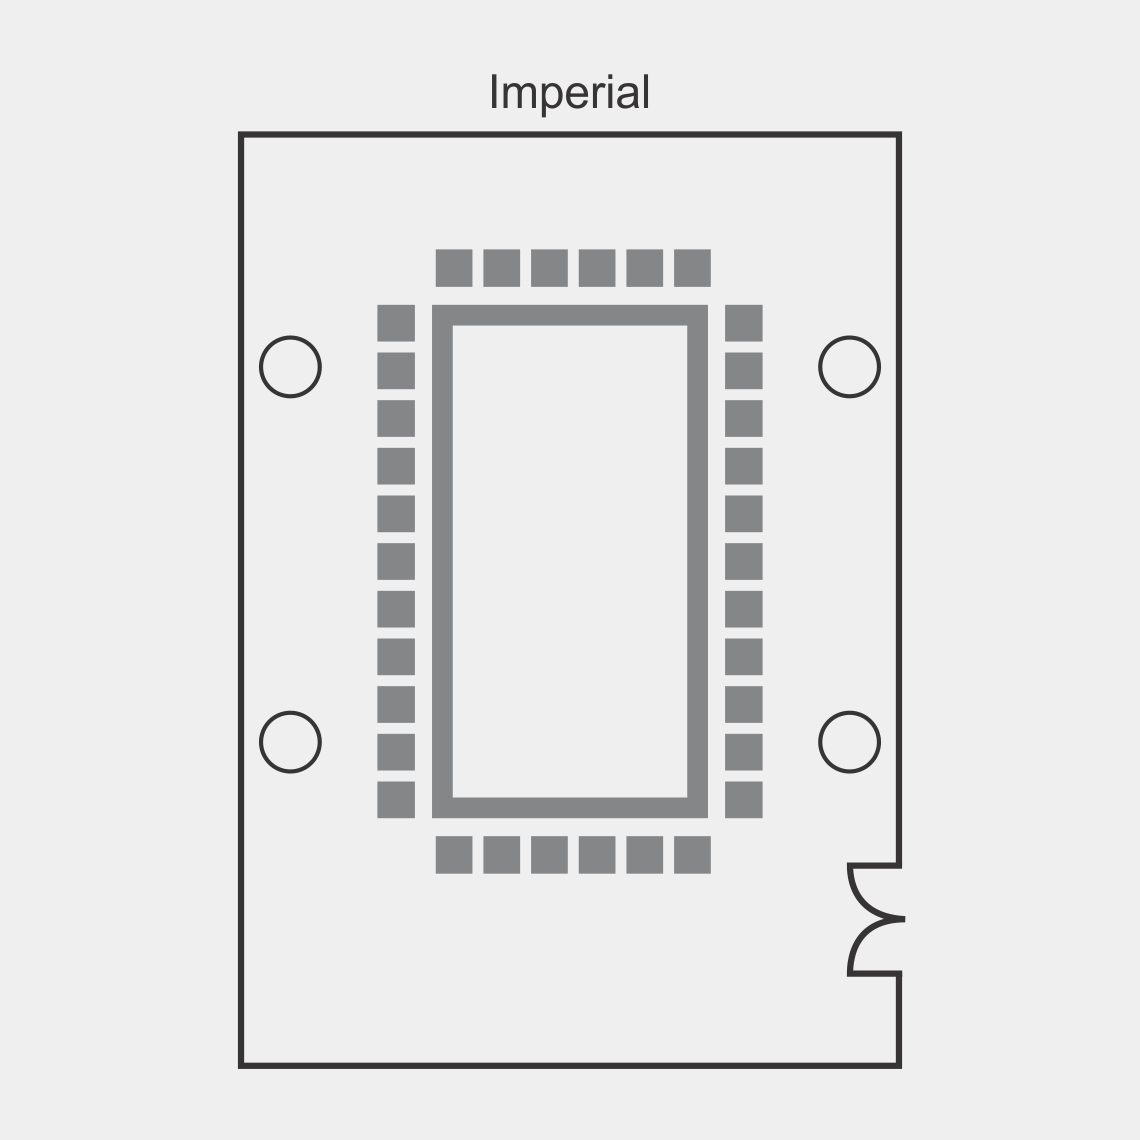 Foto del plano de sala de Eventos forma Imperial